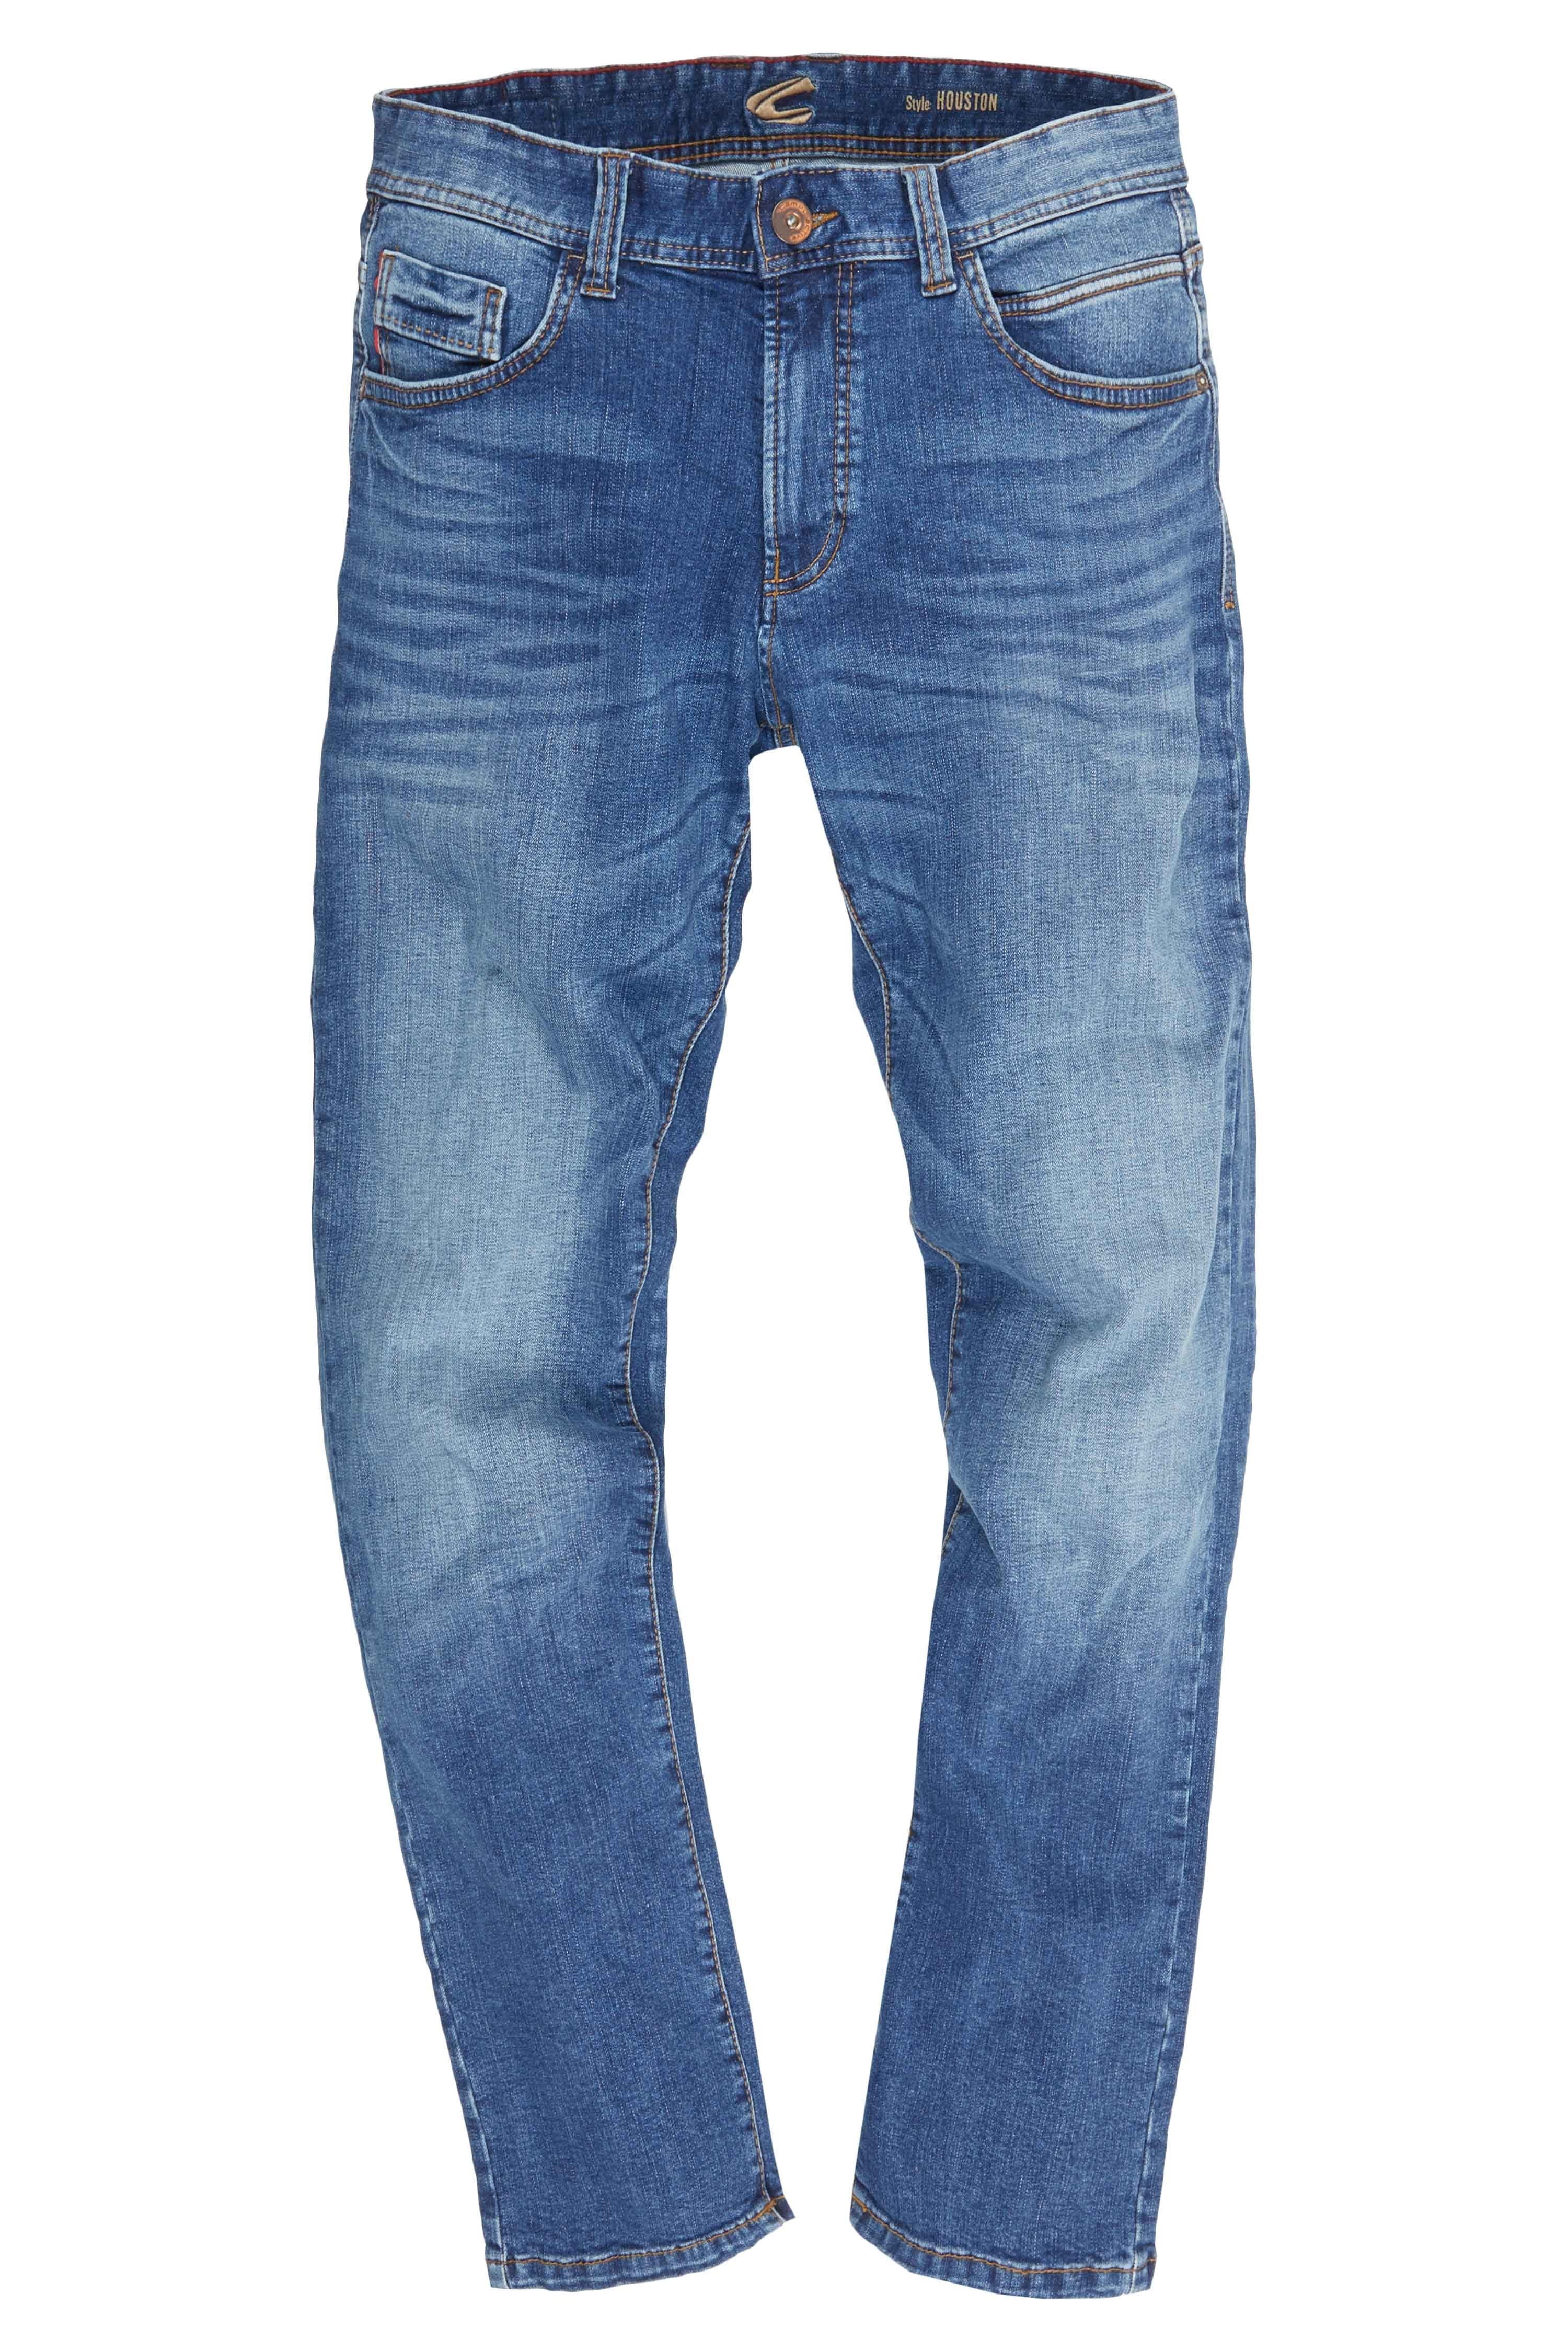 camel active Regular-fit-Jeans 5-POCKET HOUSTON blau